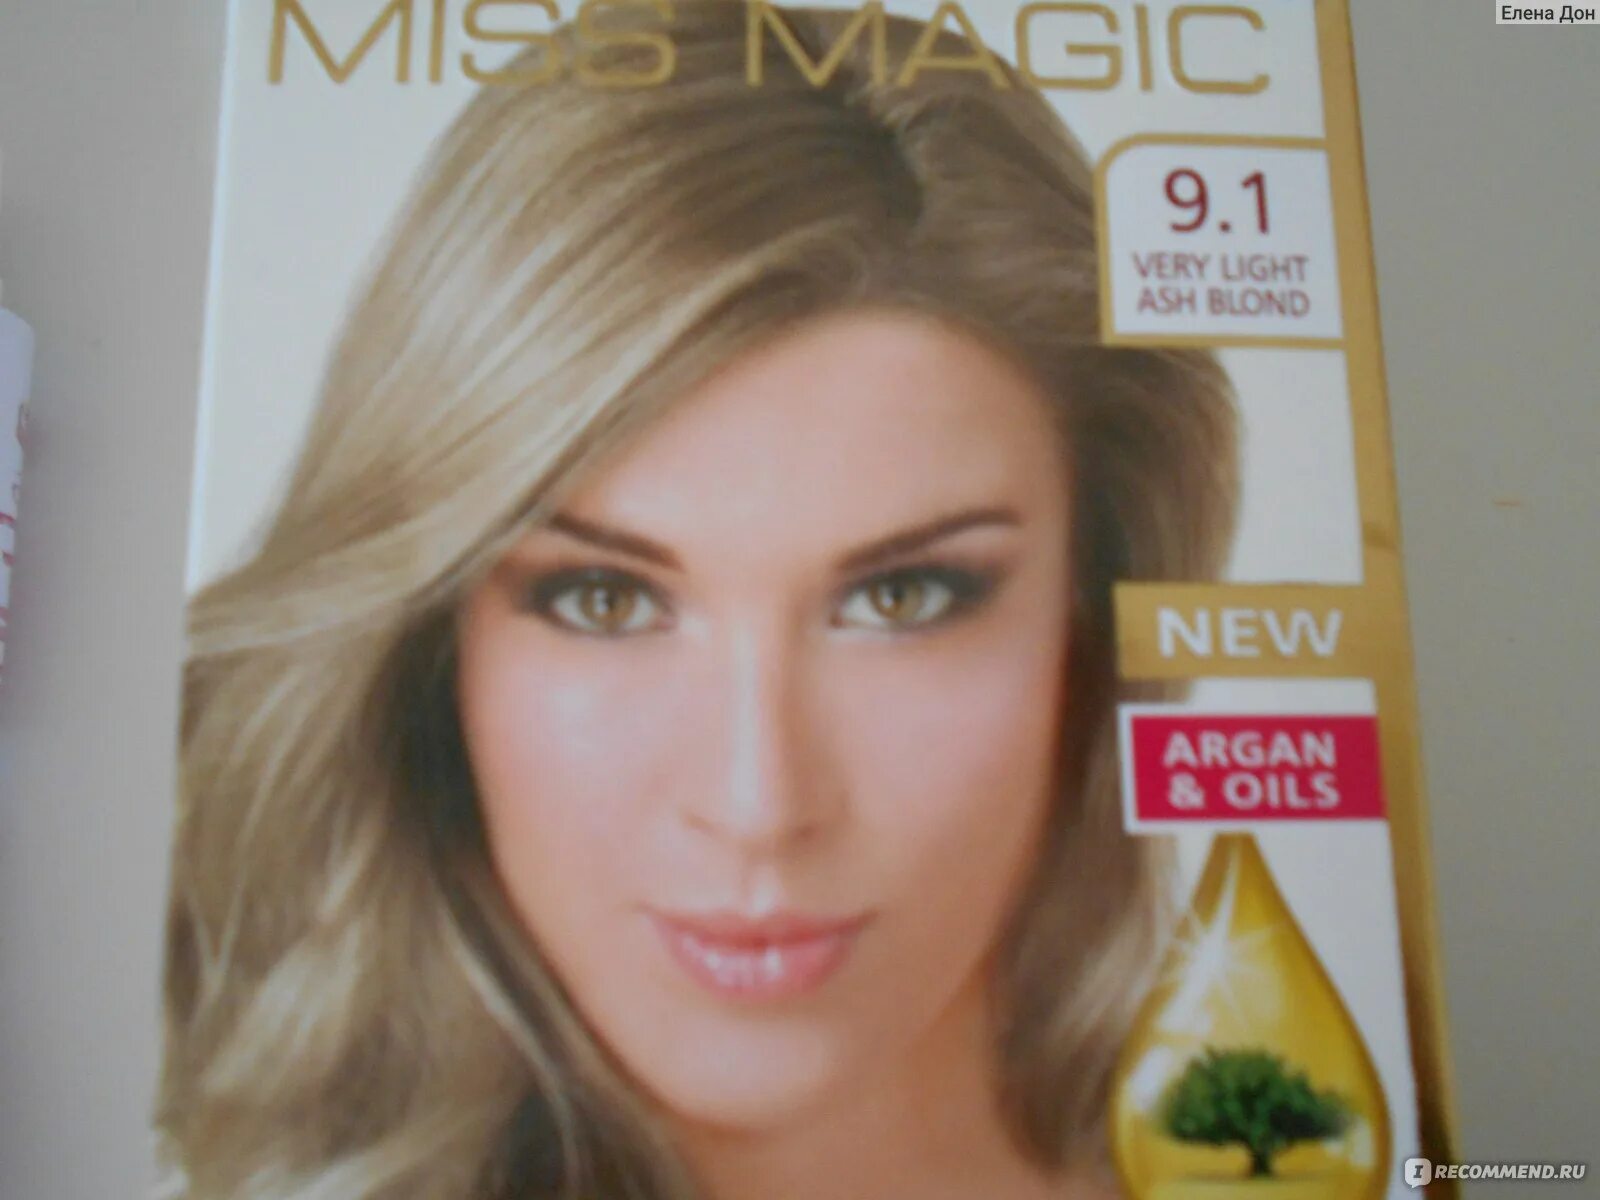 Miss Magic 9.1 блондин пепельный. Miss Magic краска 9.1. Miss Magic Luxe Colors 9.1 - блондин пепельный. "Miss Magic" Luxe Colors 122/7.1 - пепельно-русый.